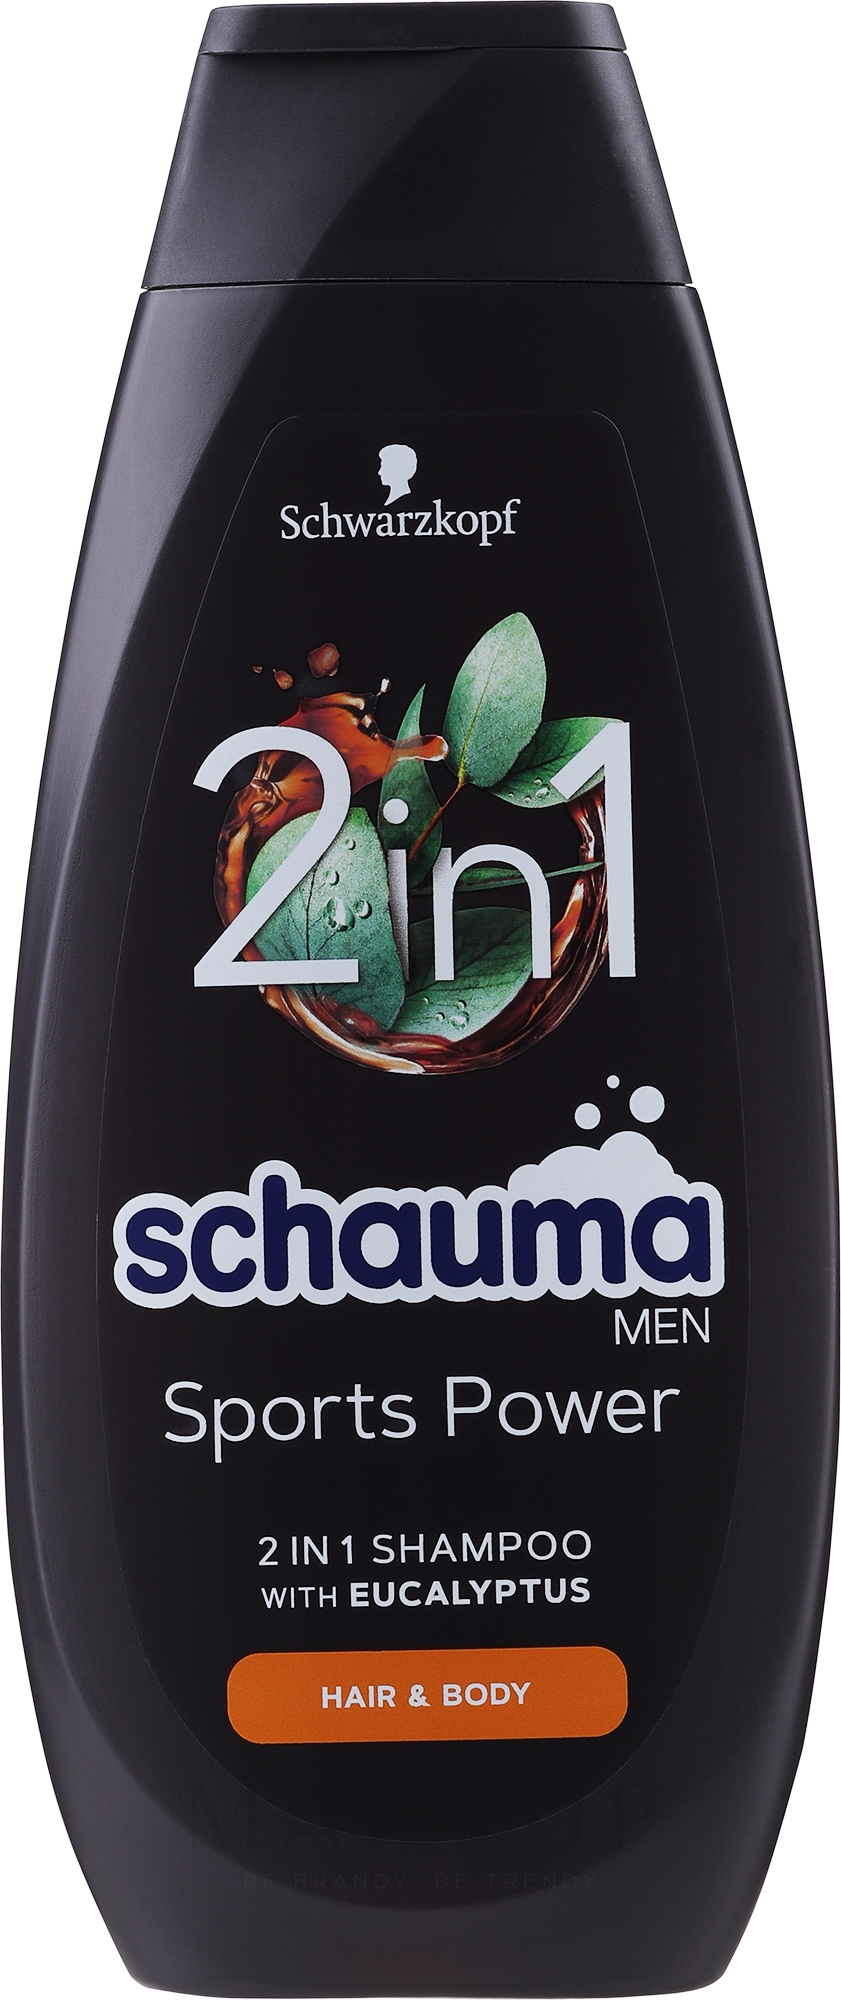 Shampoo für Männer "Sports Power" - Schwarzkopf Schauma Men Shampoo — Bild 400 ml